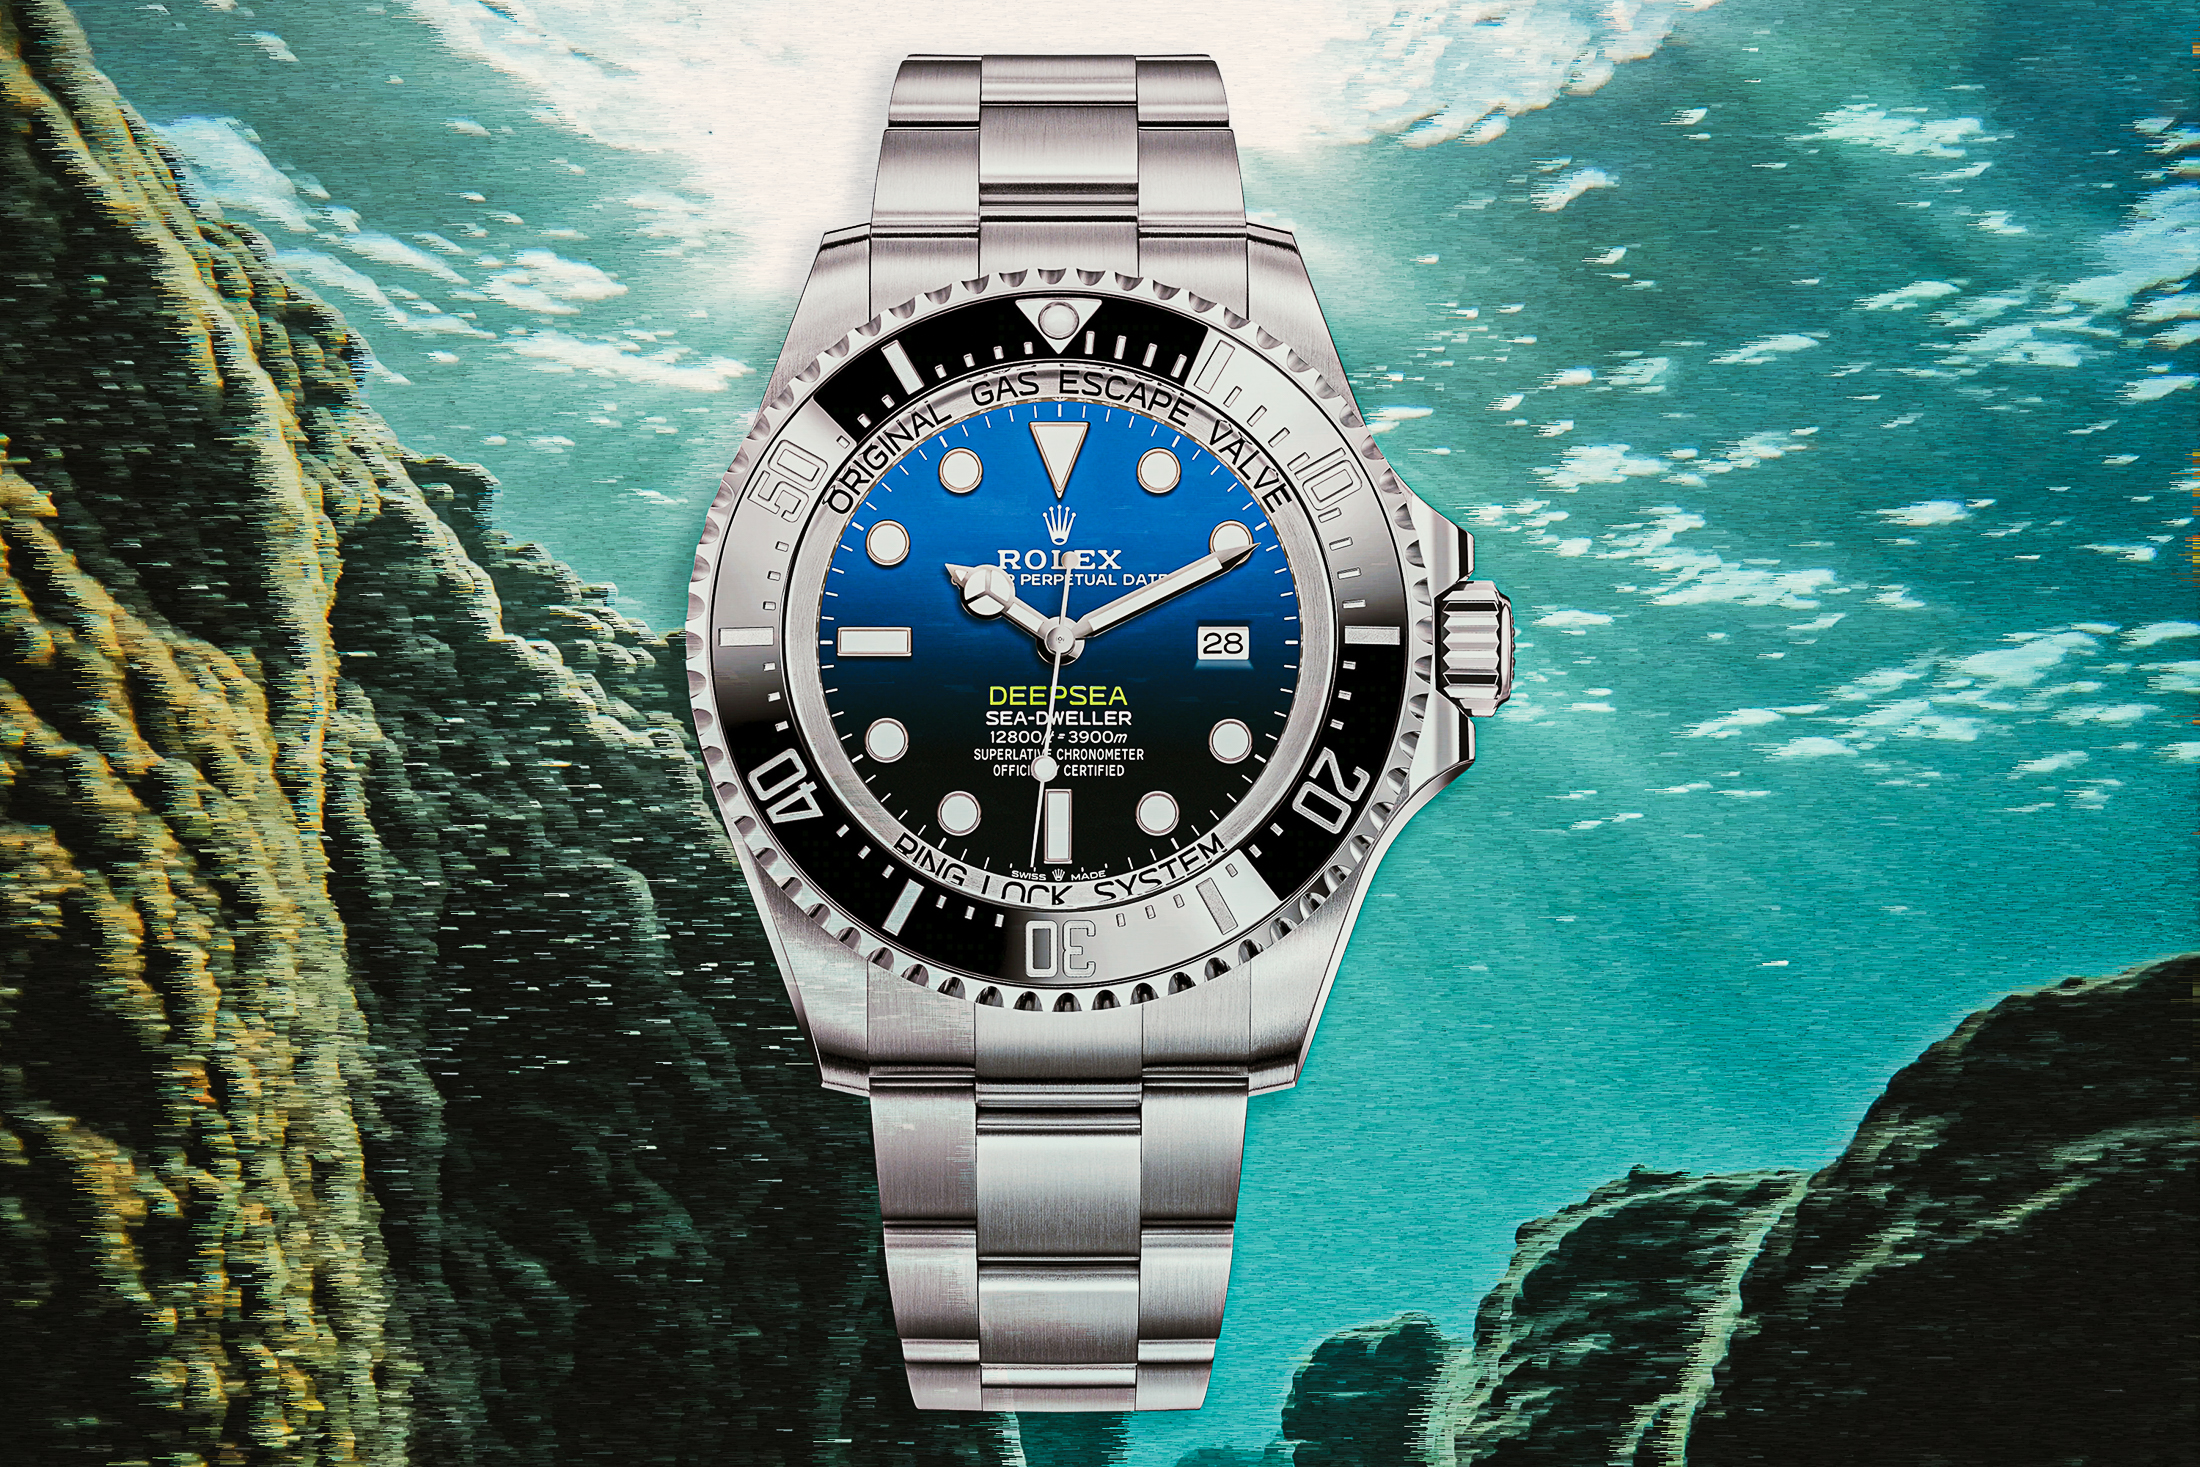 ♦即購入OK♦(❁ᴗ͈ˬᴗ͈)新品スポーツレザー腕時計 ブルー青 30m防水